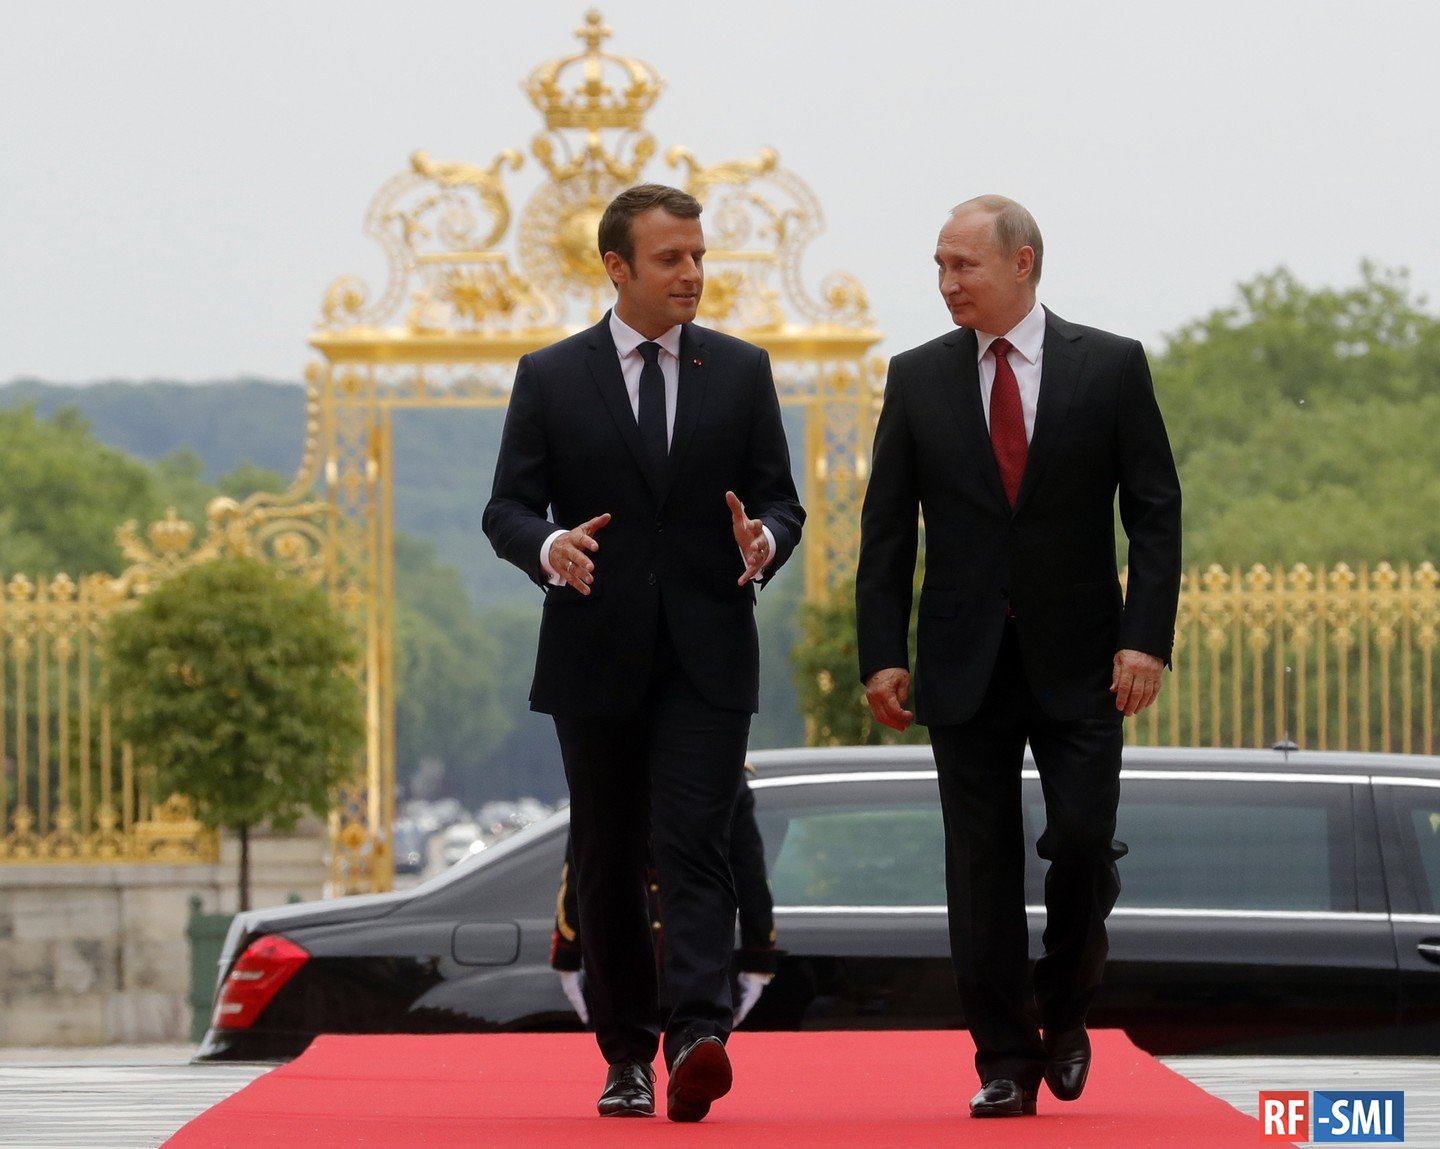 Эммануэль Макрон заявил, что он "ровня Путину", сообщили французские СМИ